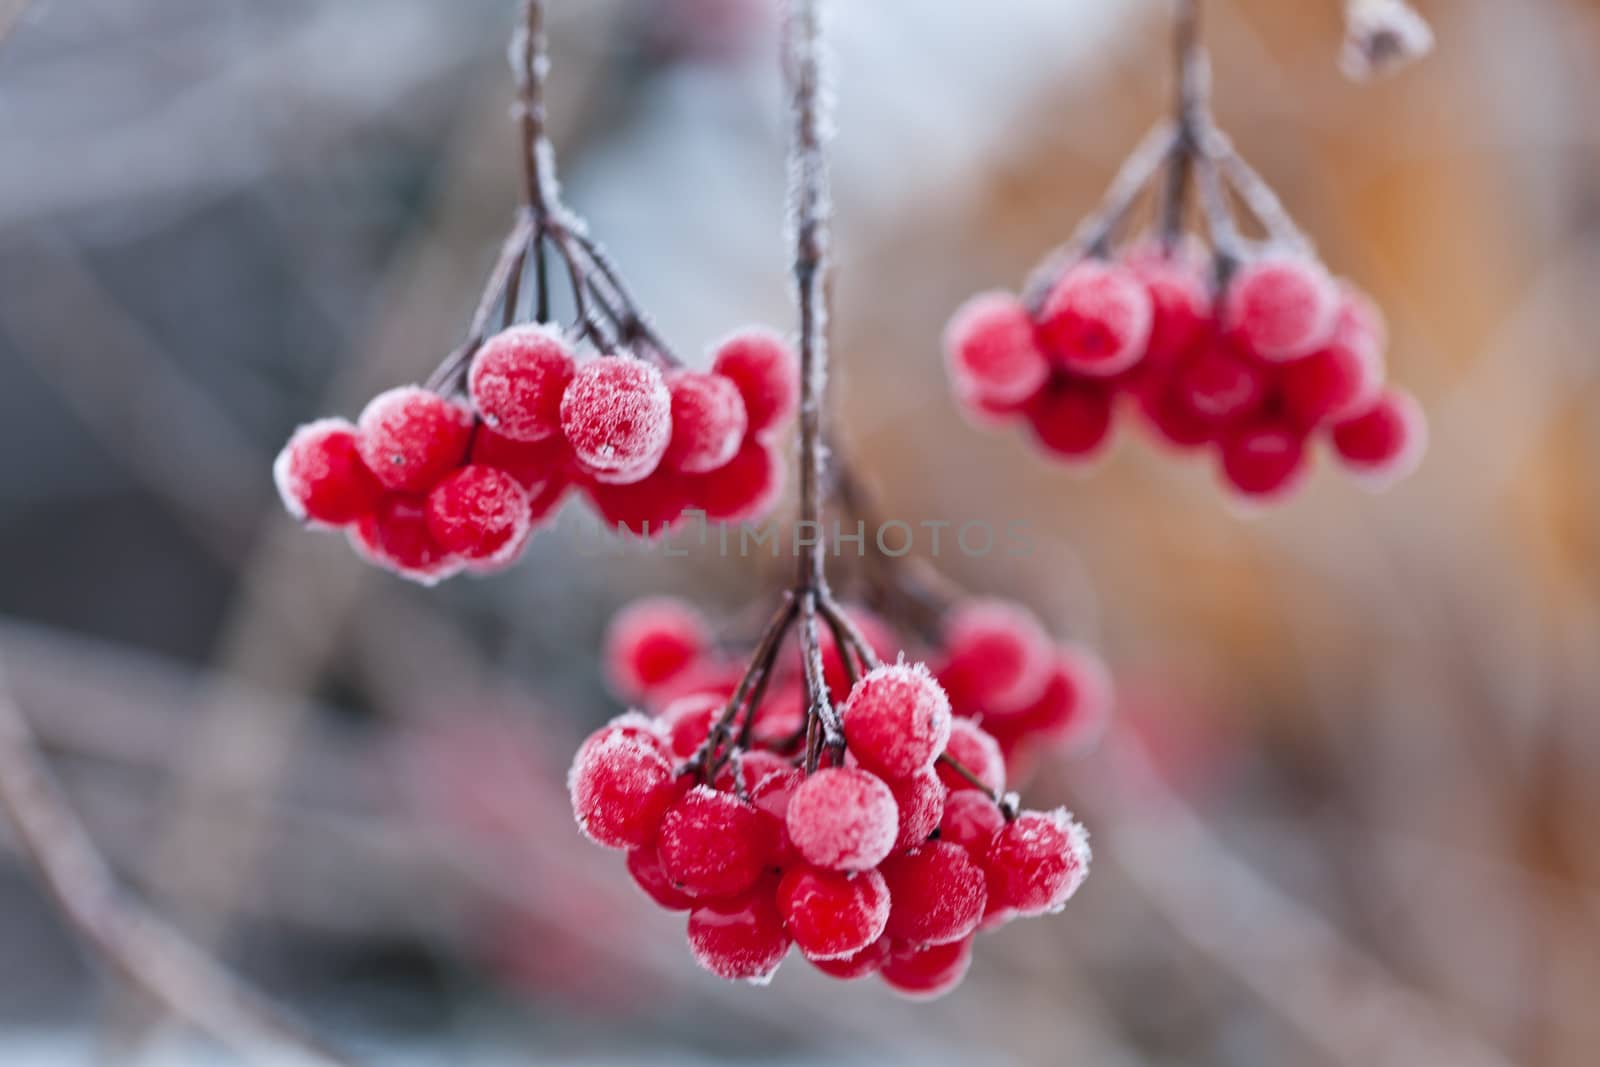 Frozen cranberry. Close-up